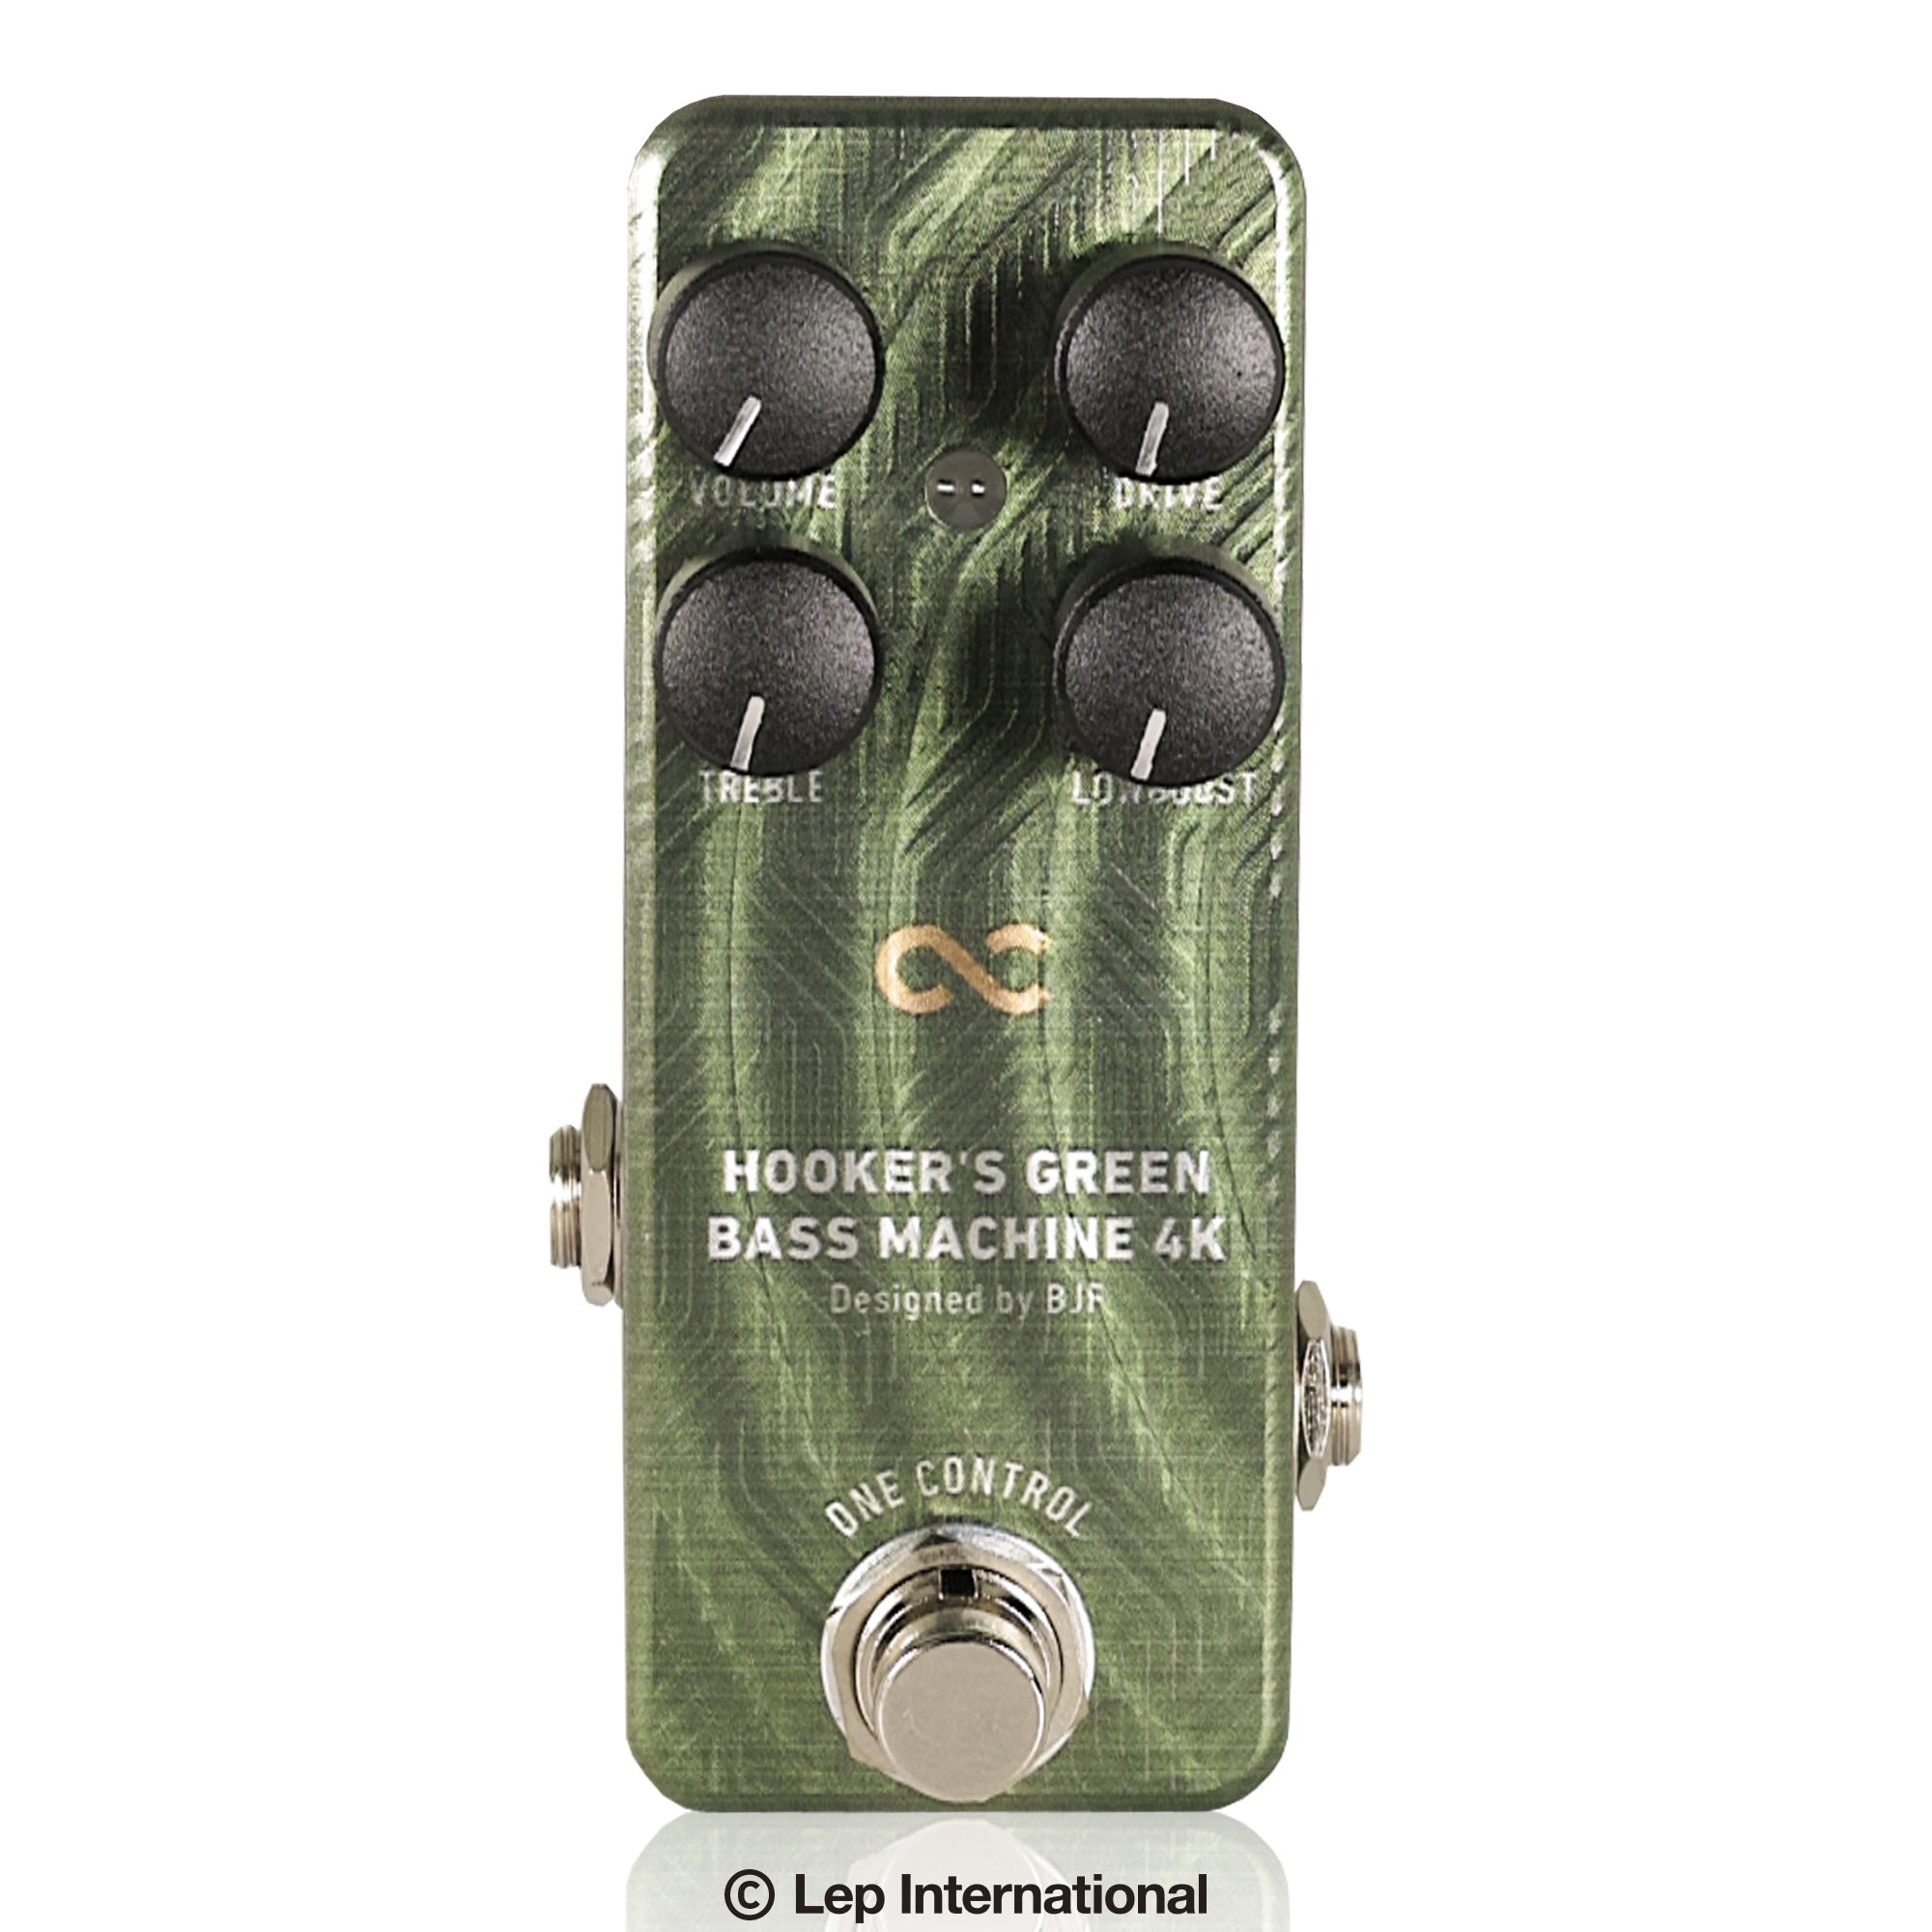 One Control /Hooker's Green Bass Machine